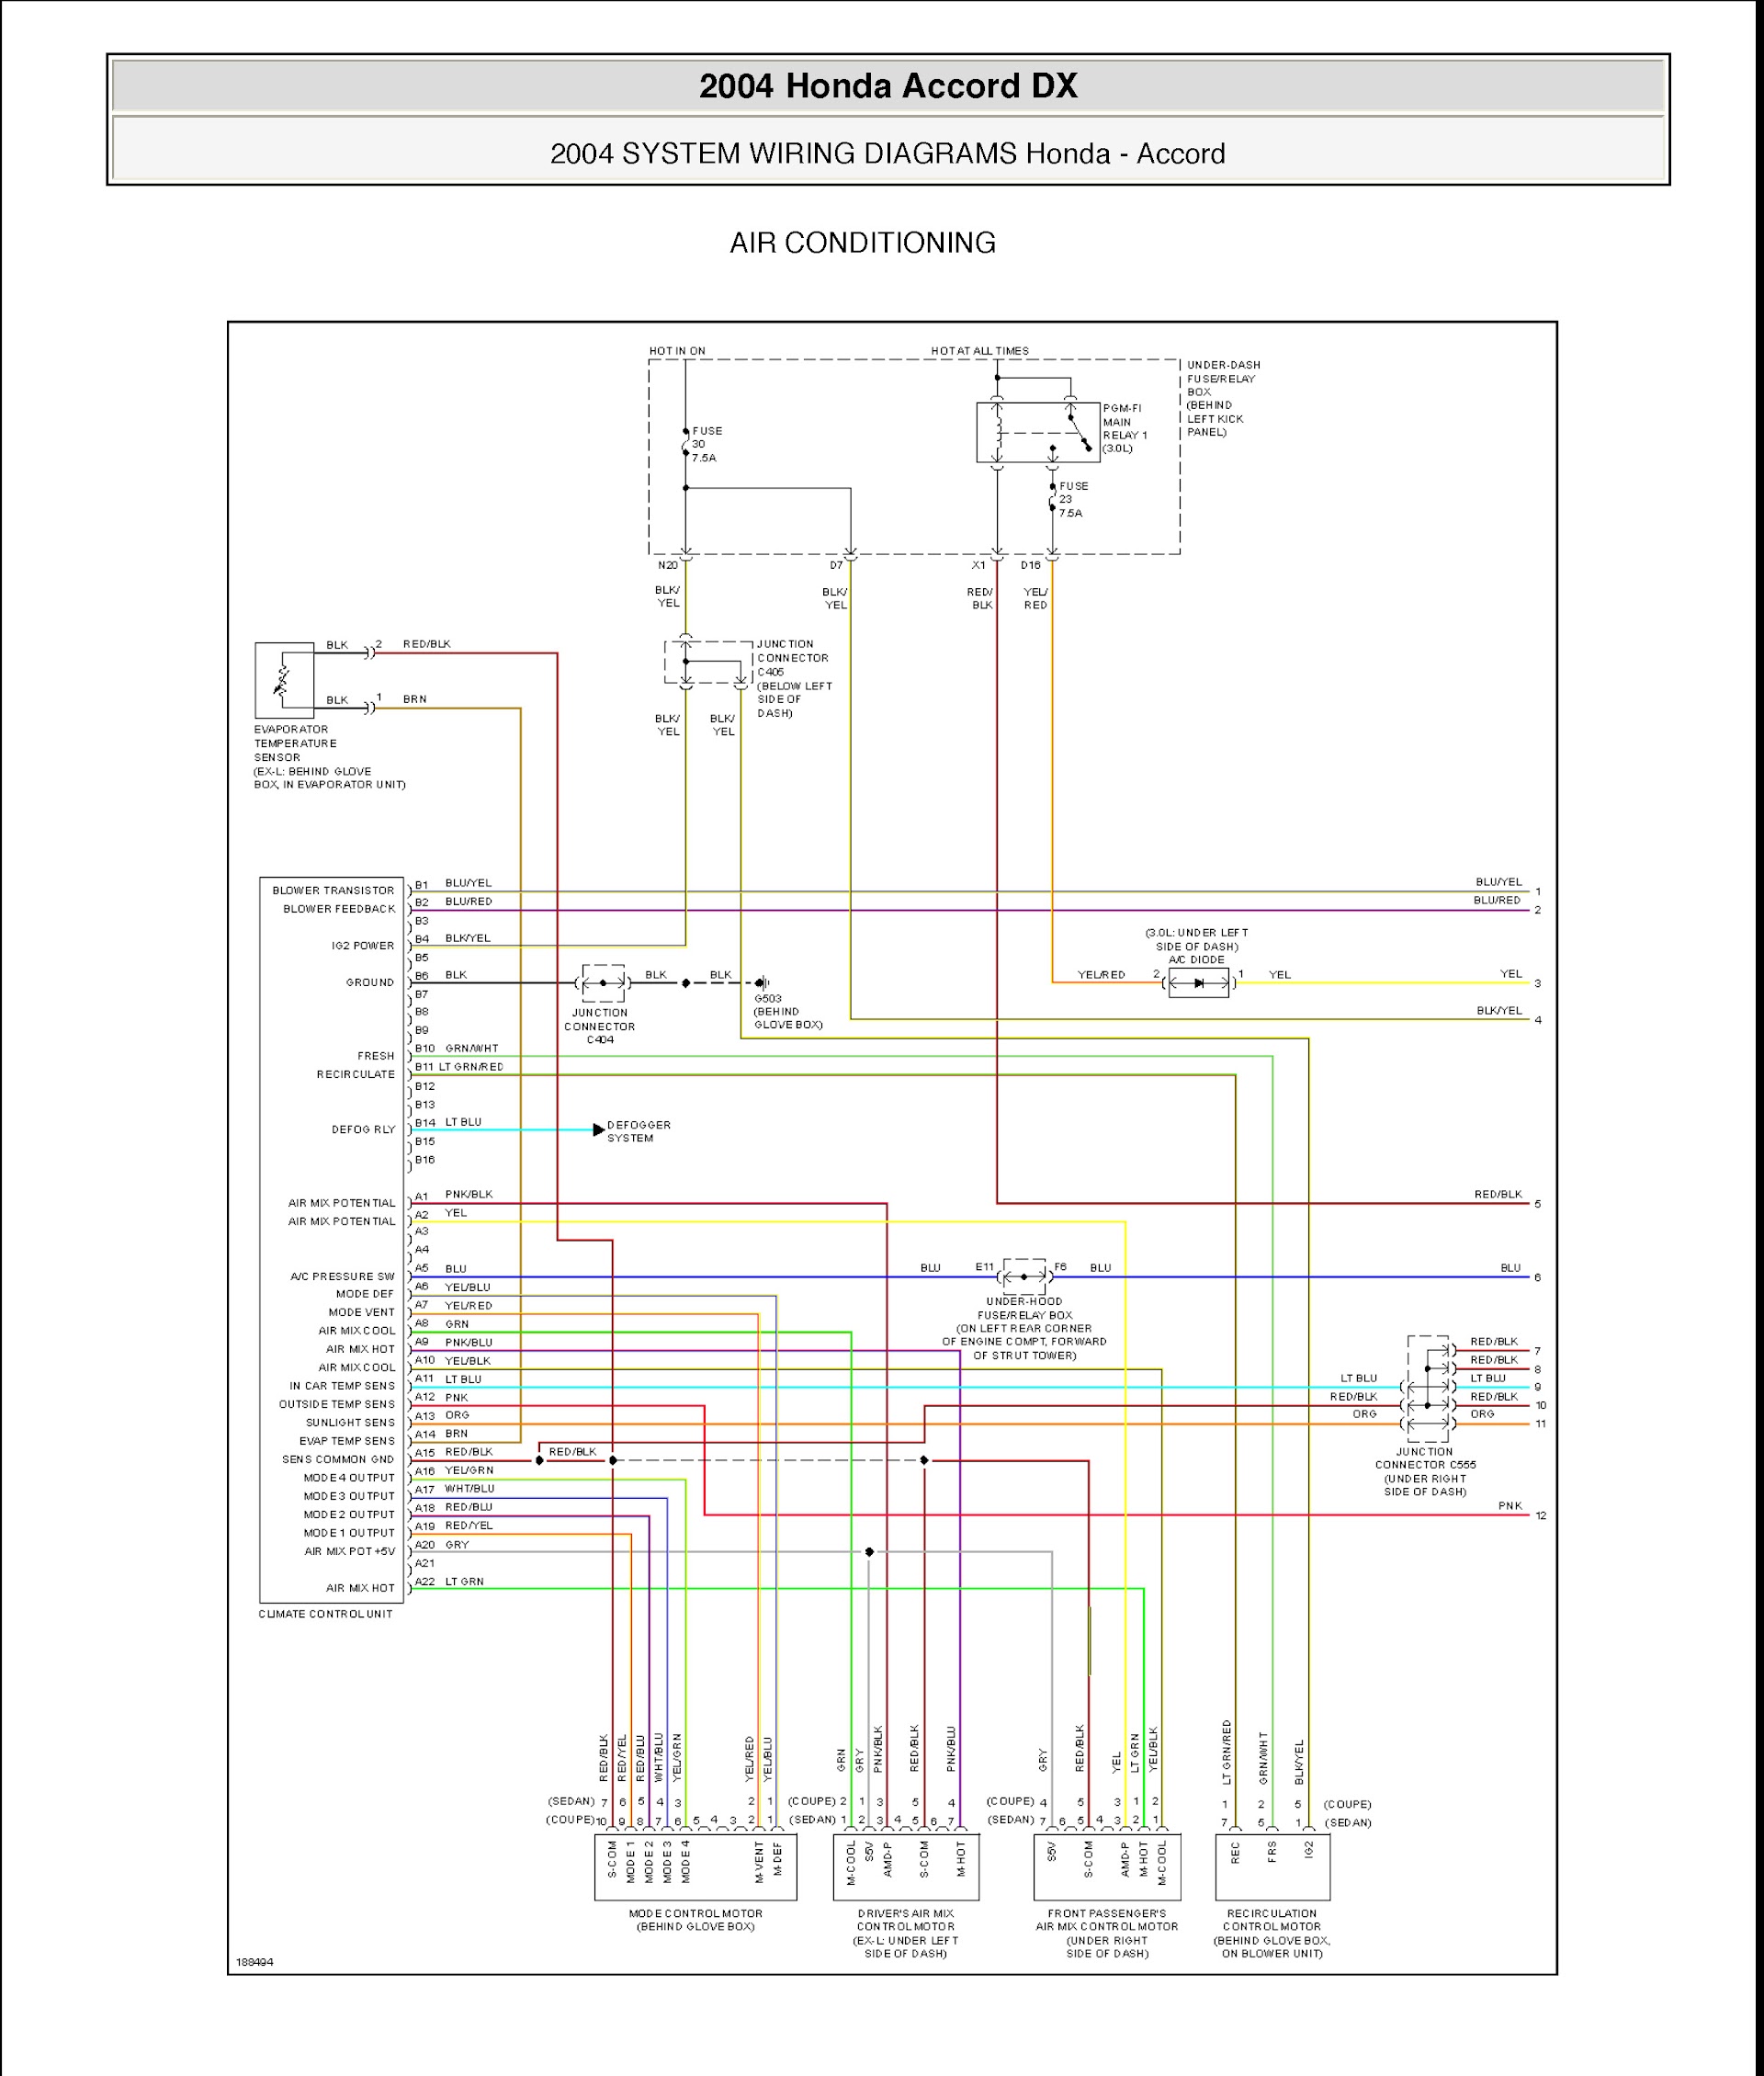 2007 Honda Accord Repair Manual, Wiring Diagram